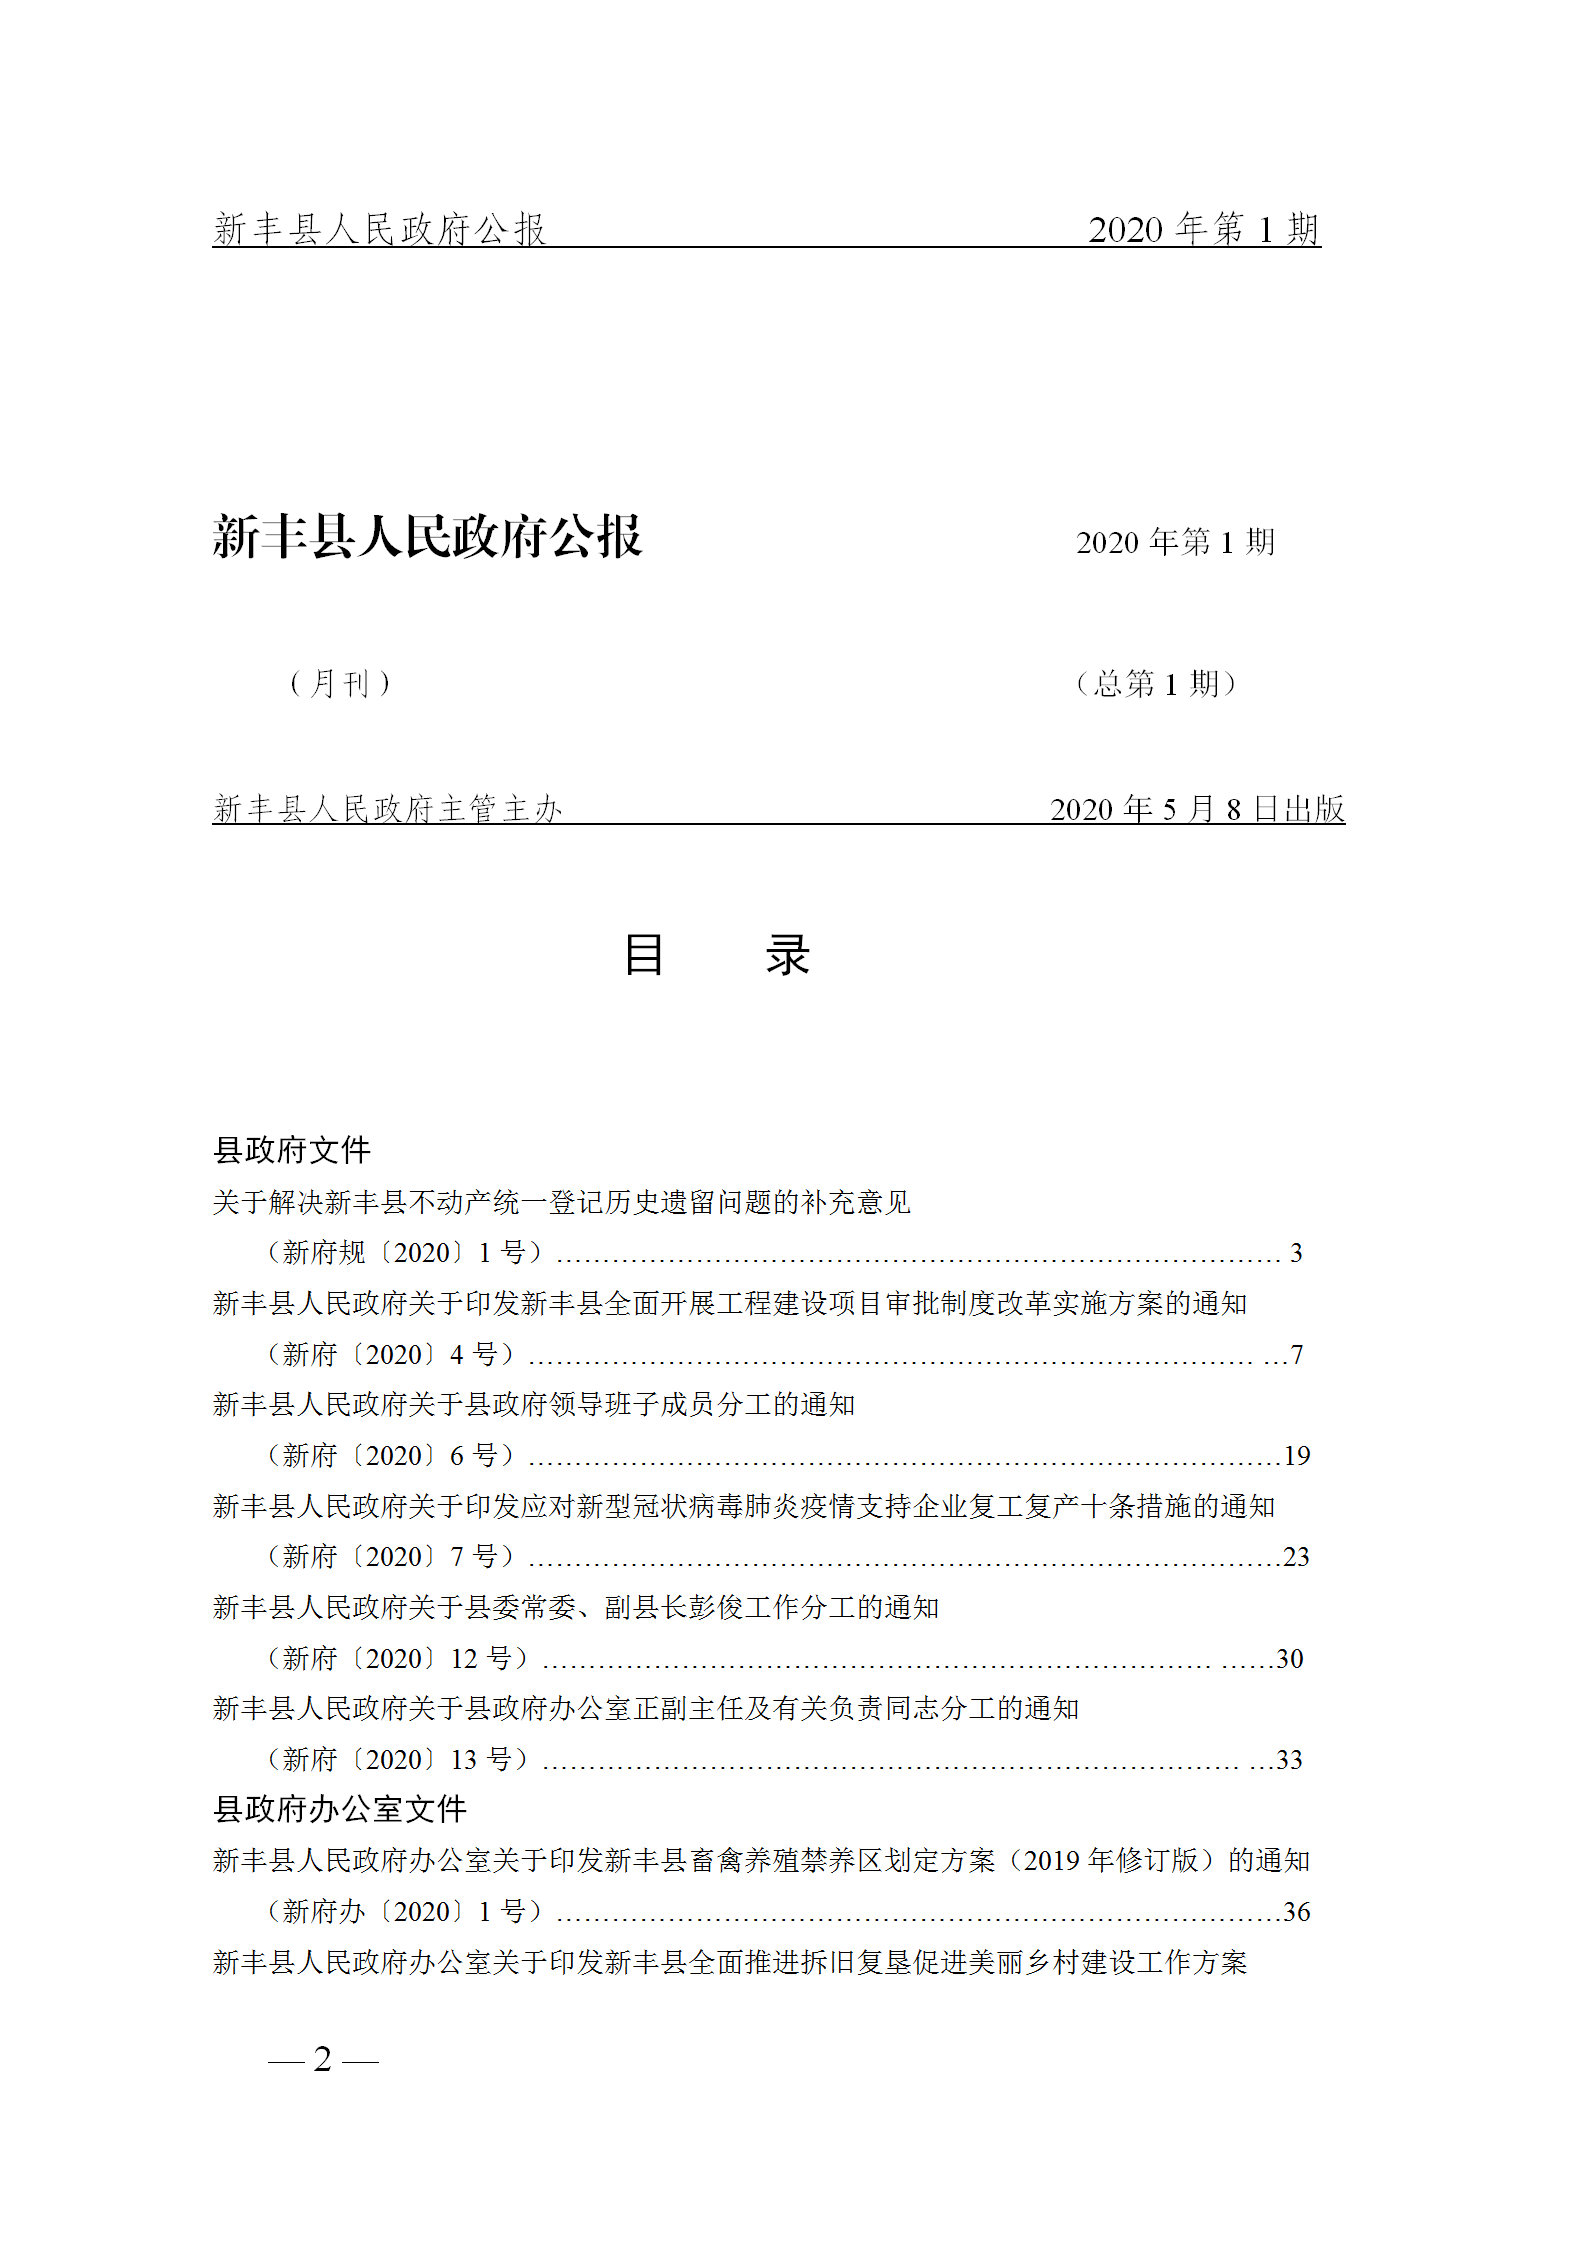 《新丰县人民政府公报》2020年第1期(1)_02.png